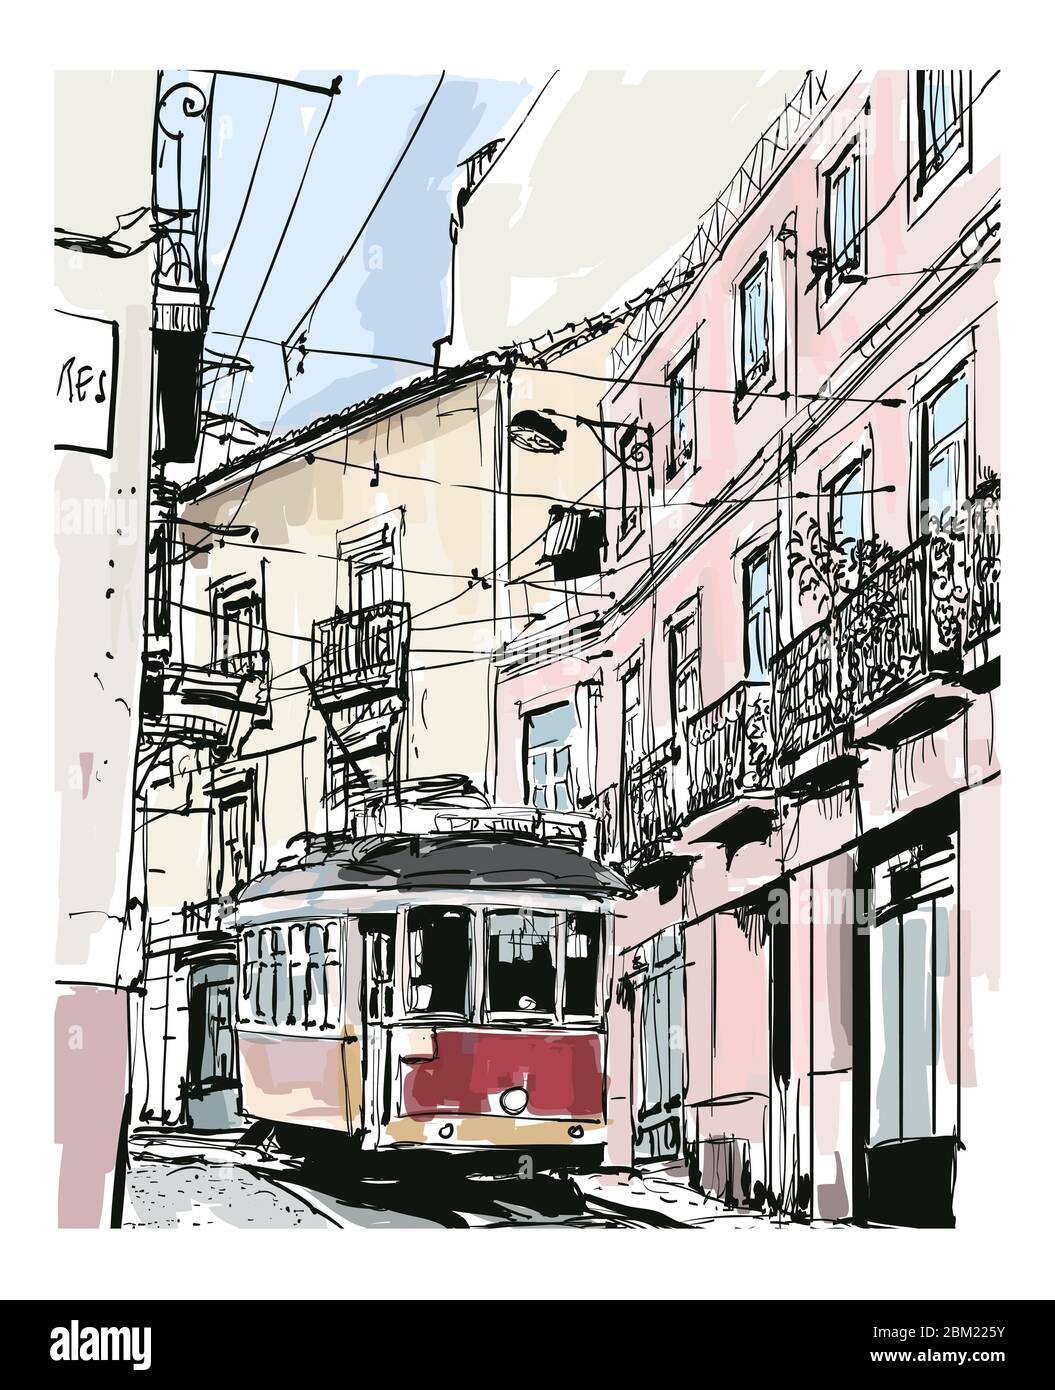 Vista sulla strada con il famoso tram vecchio a Lisbona, Portogallo - illustrazione vettoriale (ideale per la stampa su tessuto o carta, poster o carta da parati, casa dec Illustrazione Vettoriale